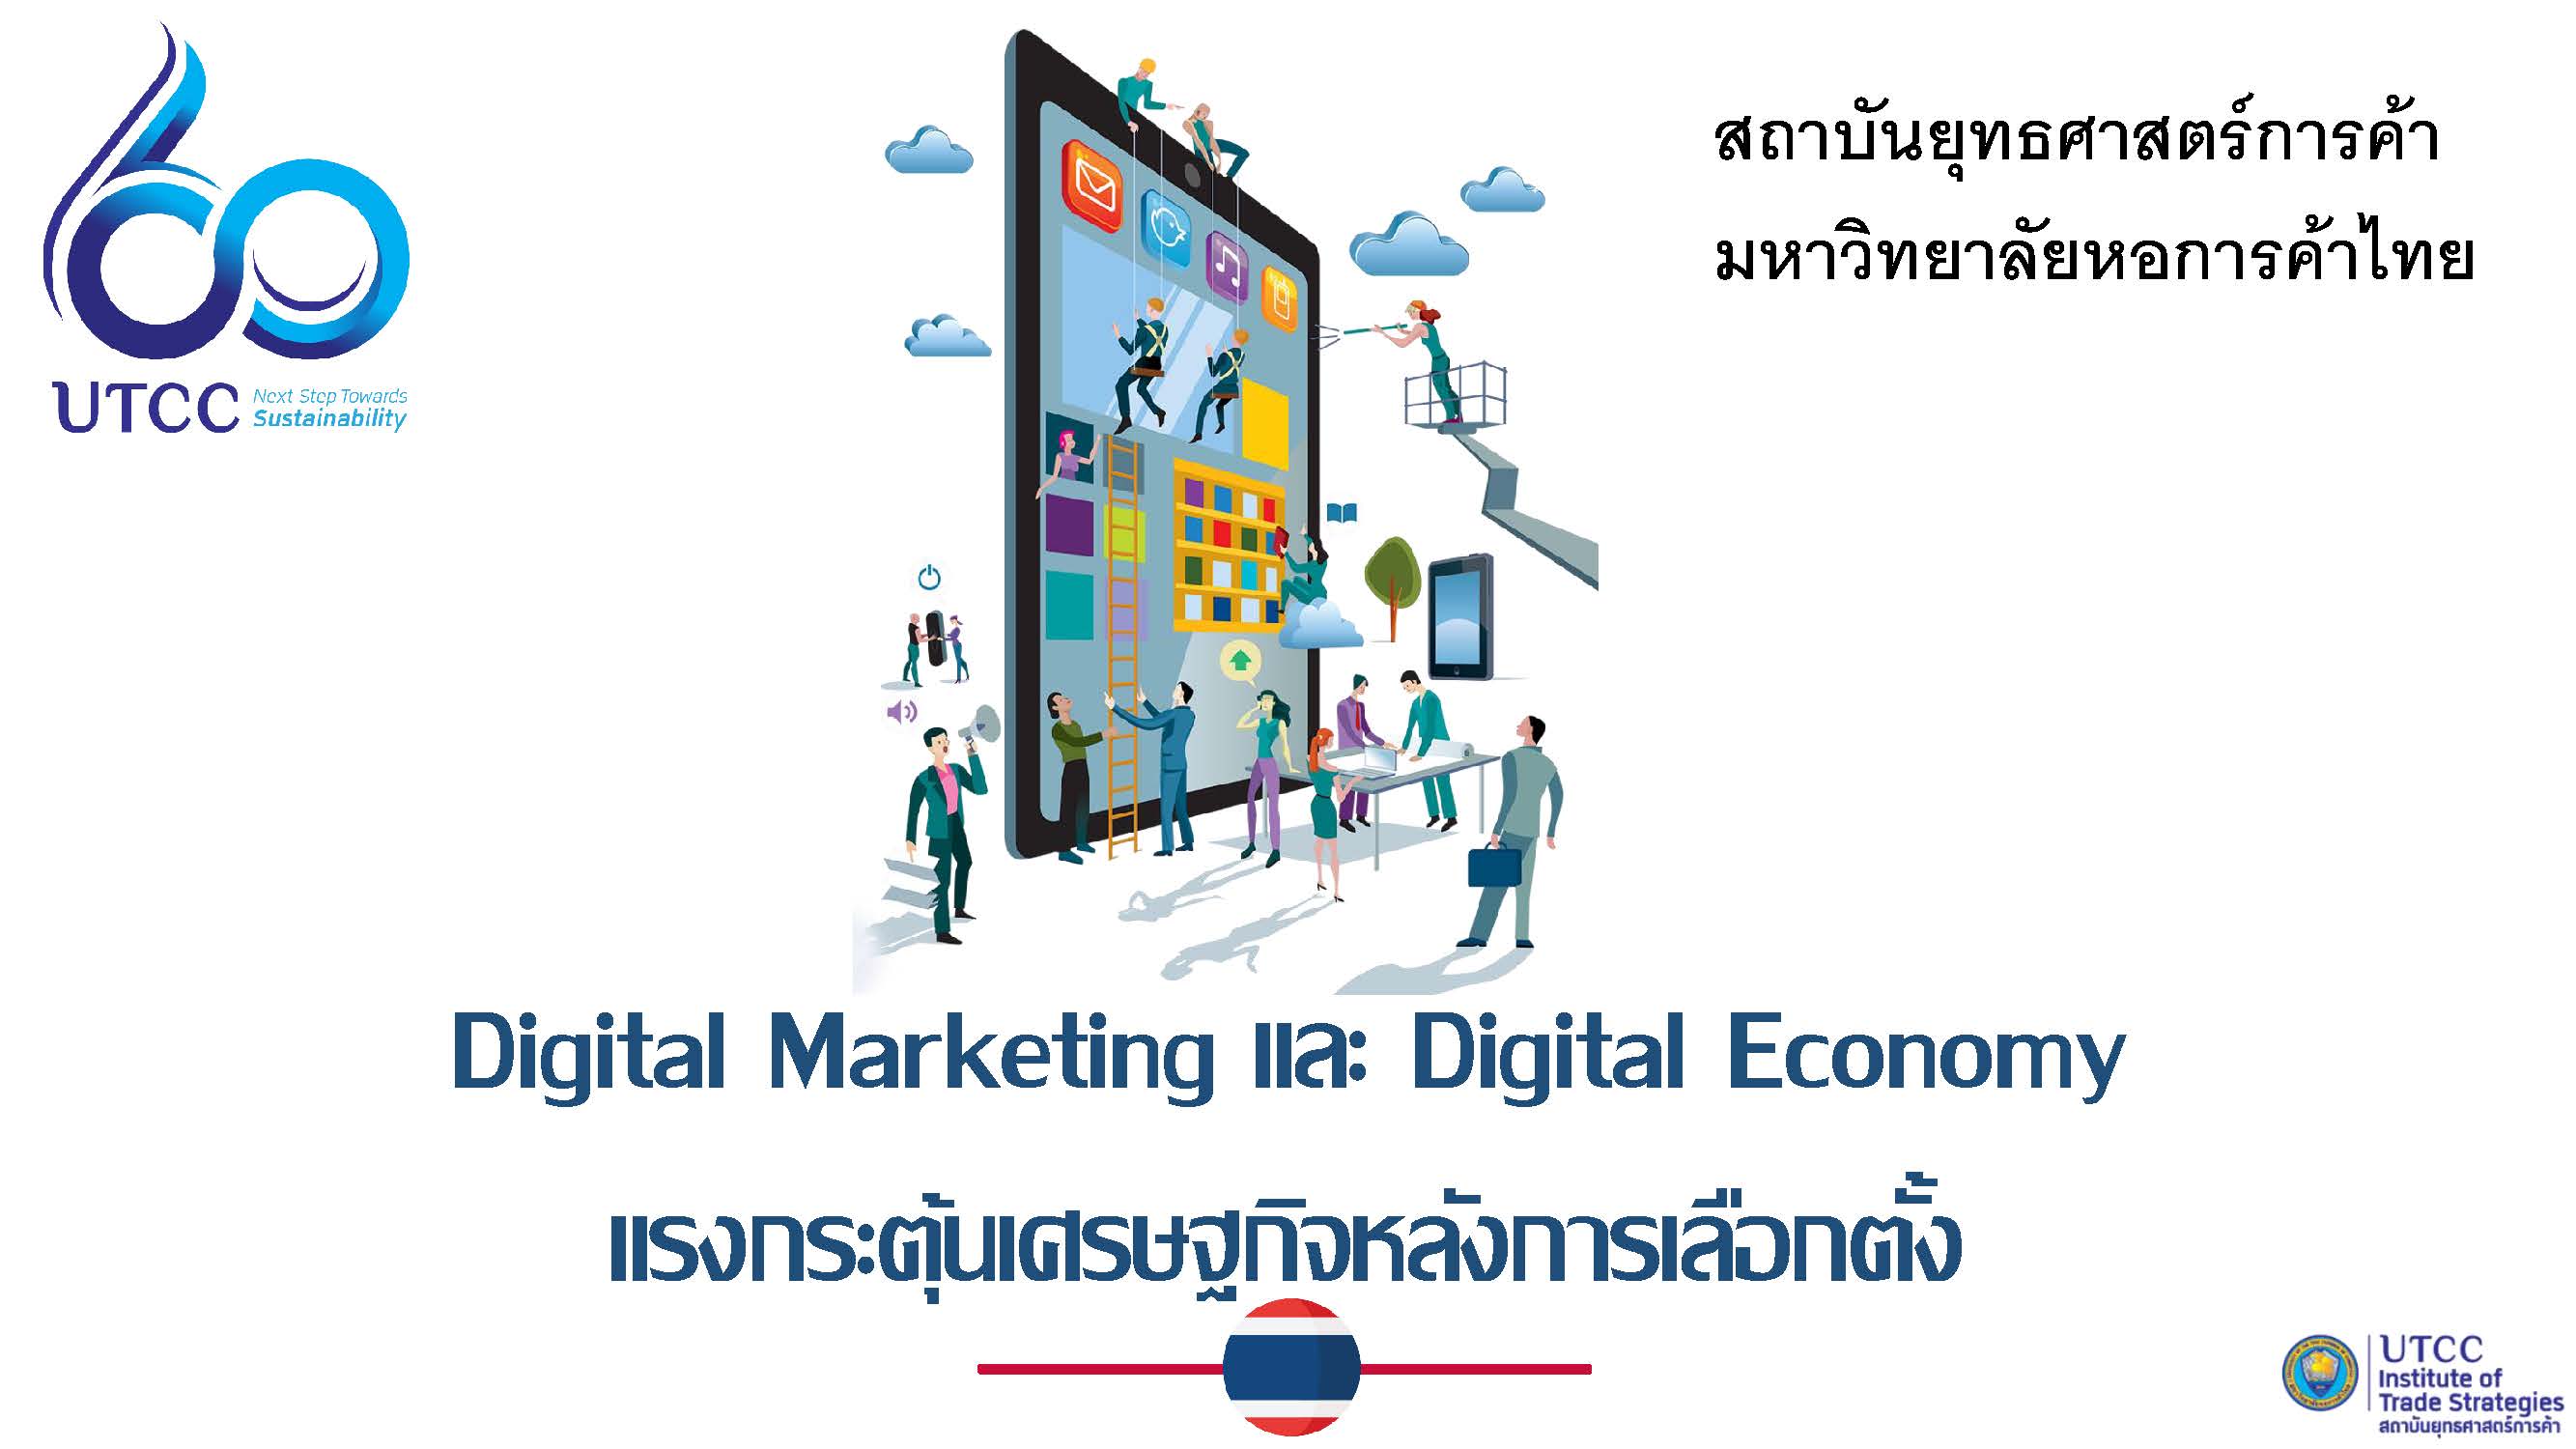 Digital Marketing และ Digital Economy แรงกระตุ้นเศรษฐกิจหลังการเลือกตั้ง (ประชาชน)